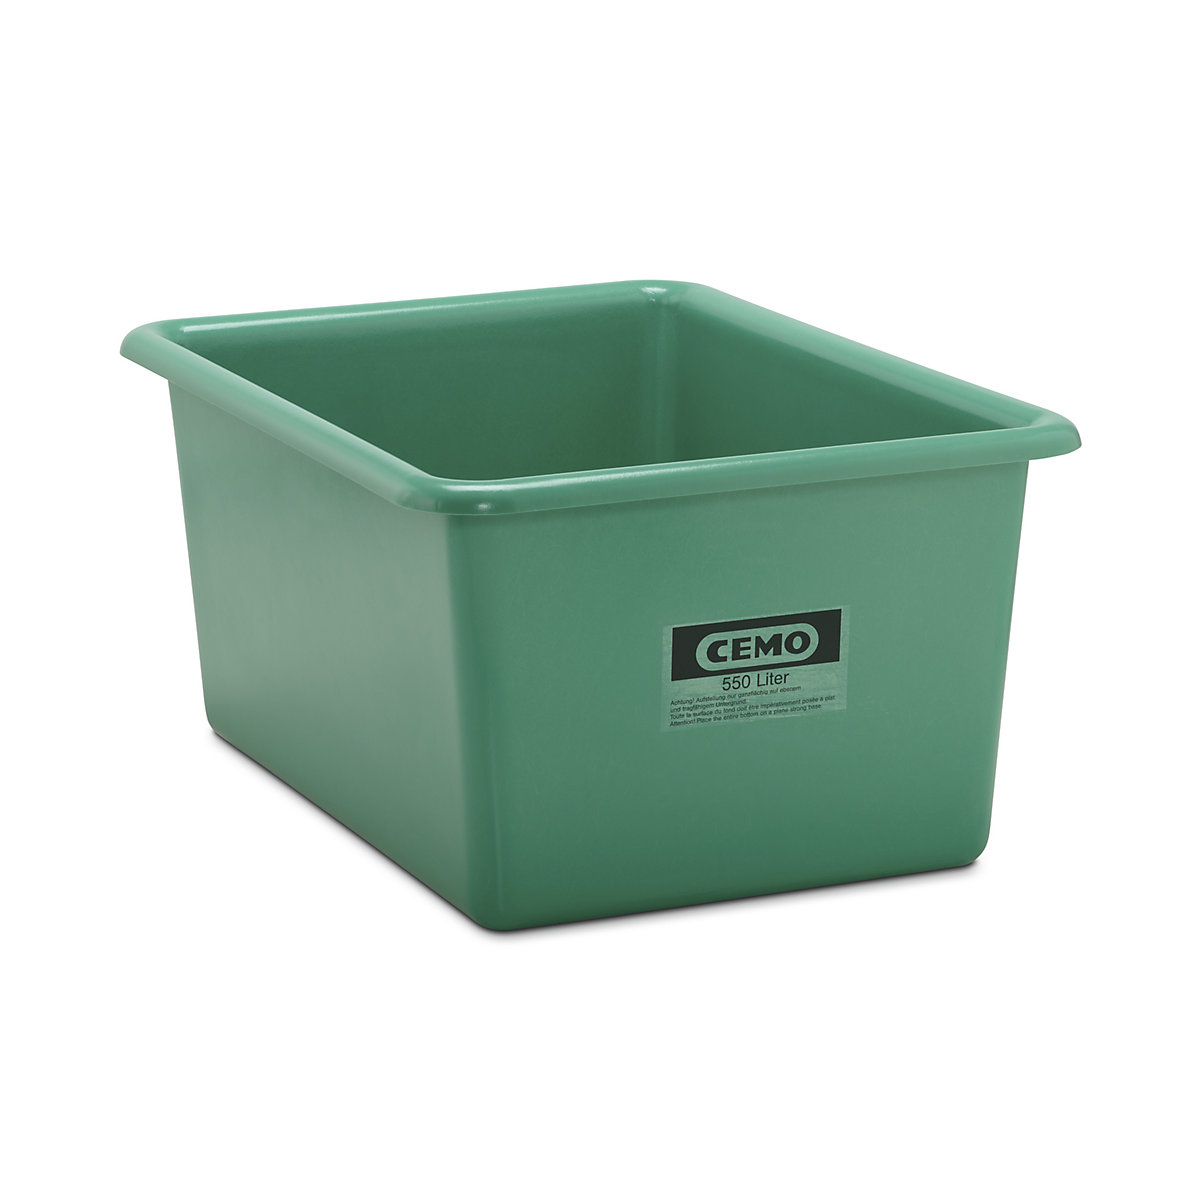 Großbehälter aus GfK CEMO, Inhalt 550 l, LxBxH 1320 x 970 x 620 mm, grün